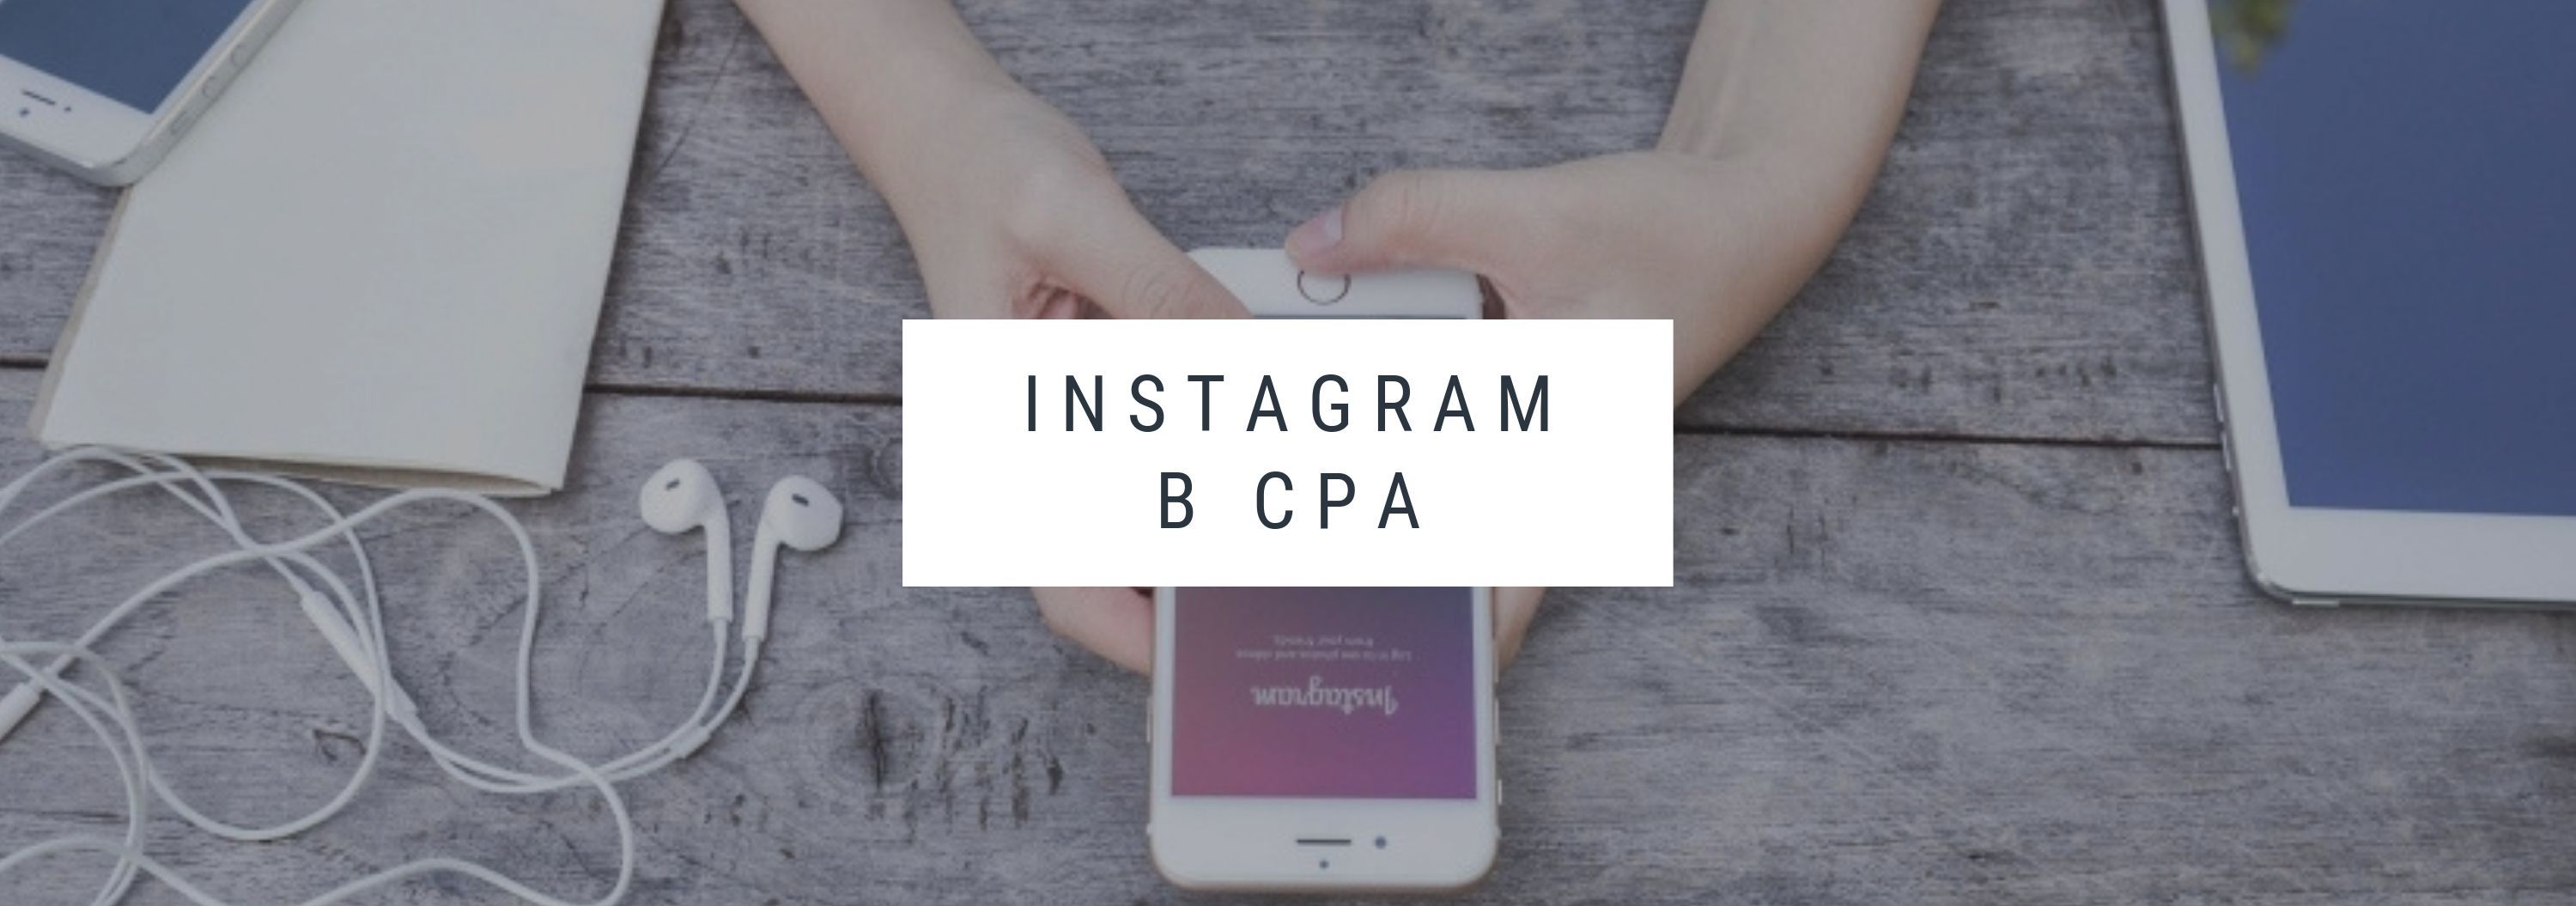 Instagram* в CPA как канал привлечения трафика